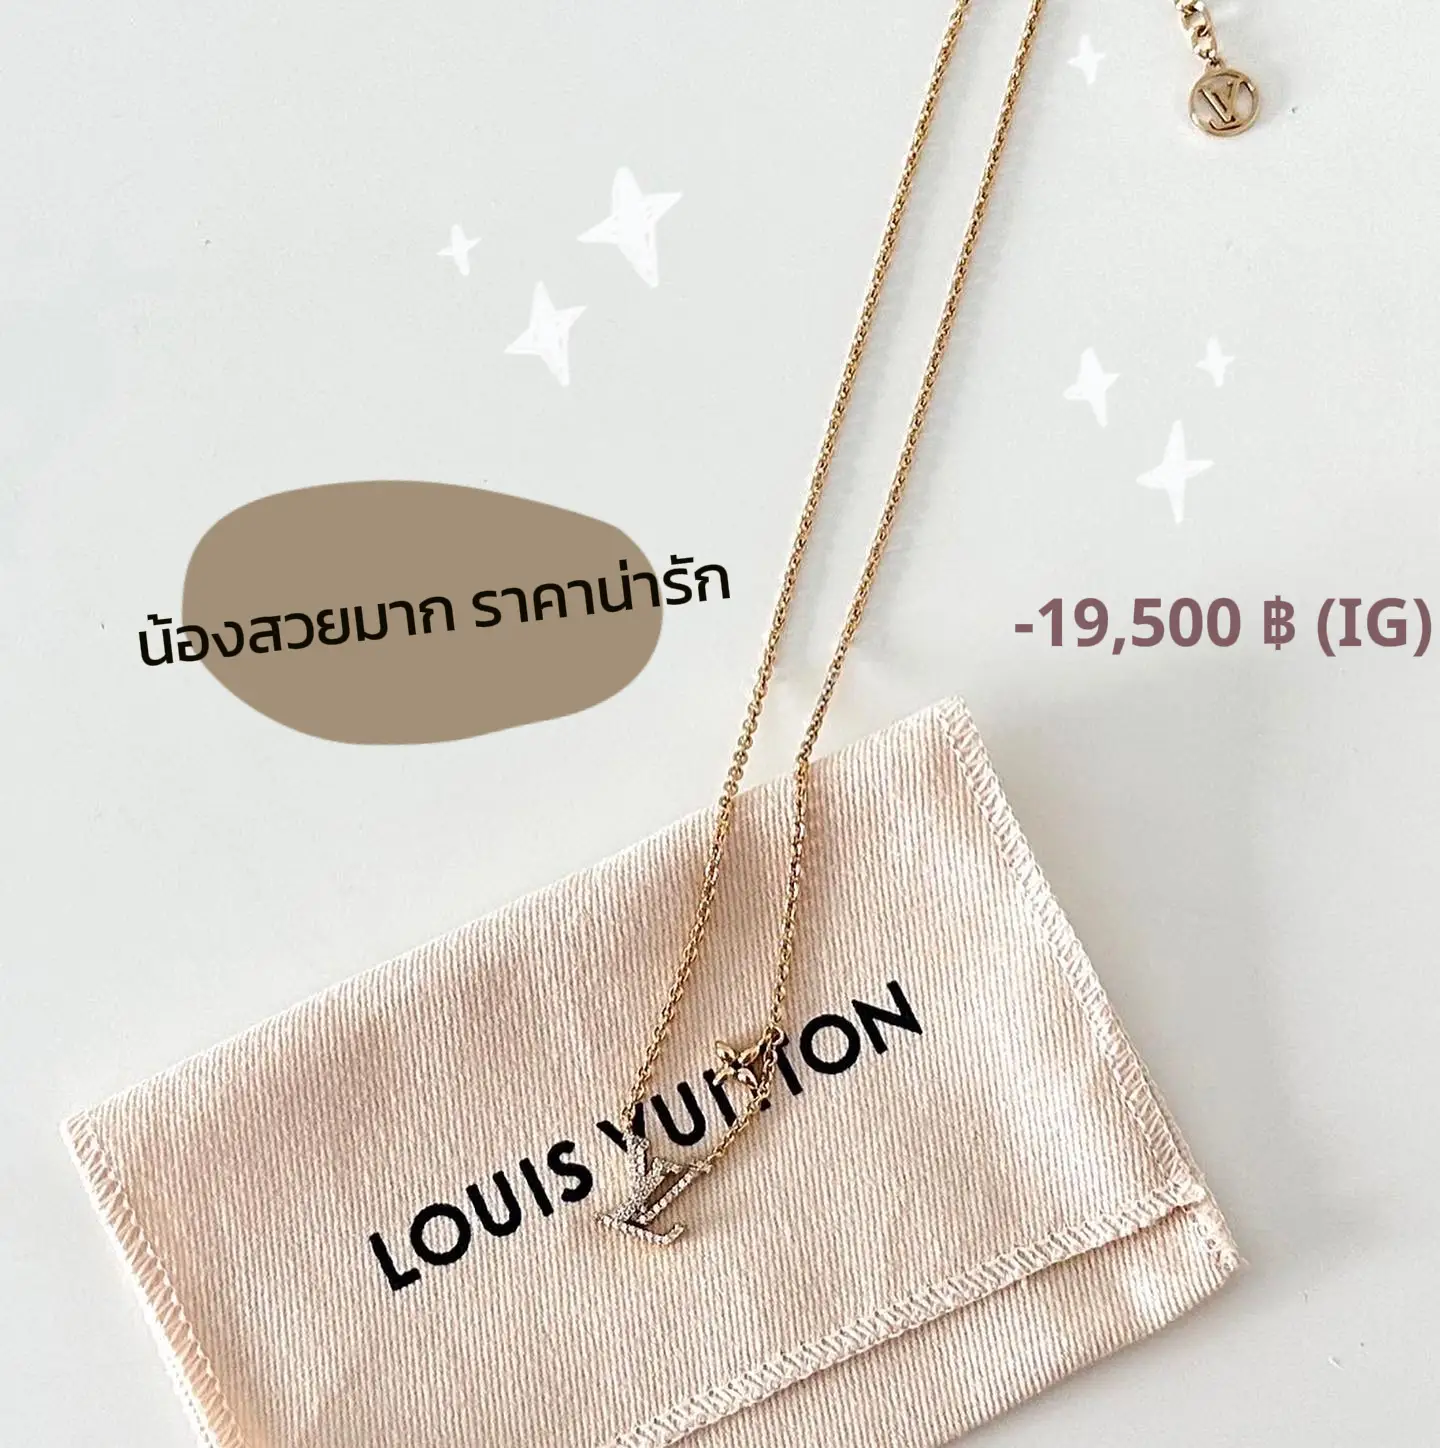 Unboxing Louis Vuitton LV ICONIC NECKLACE 